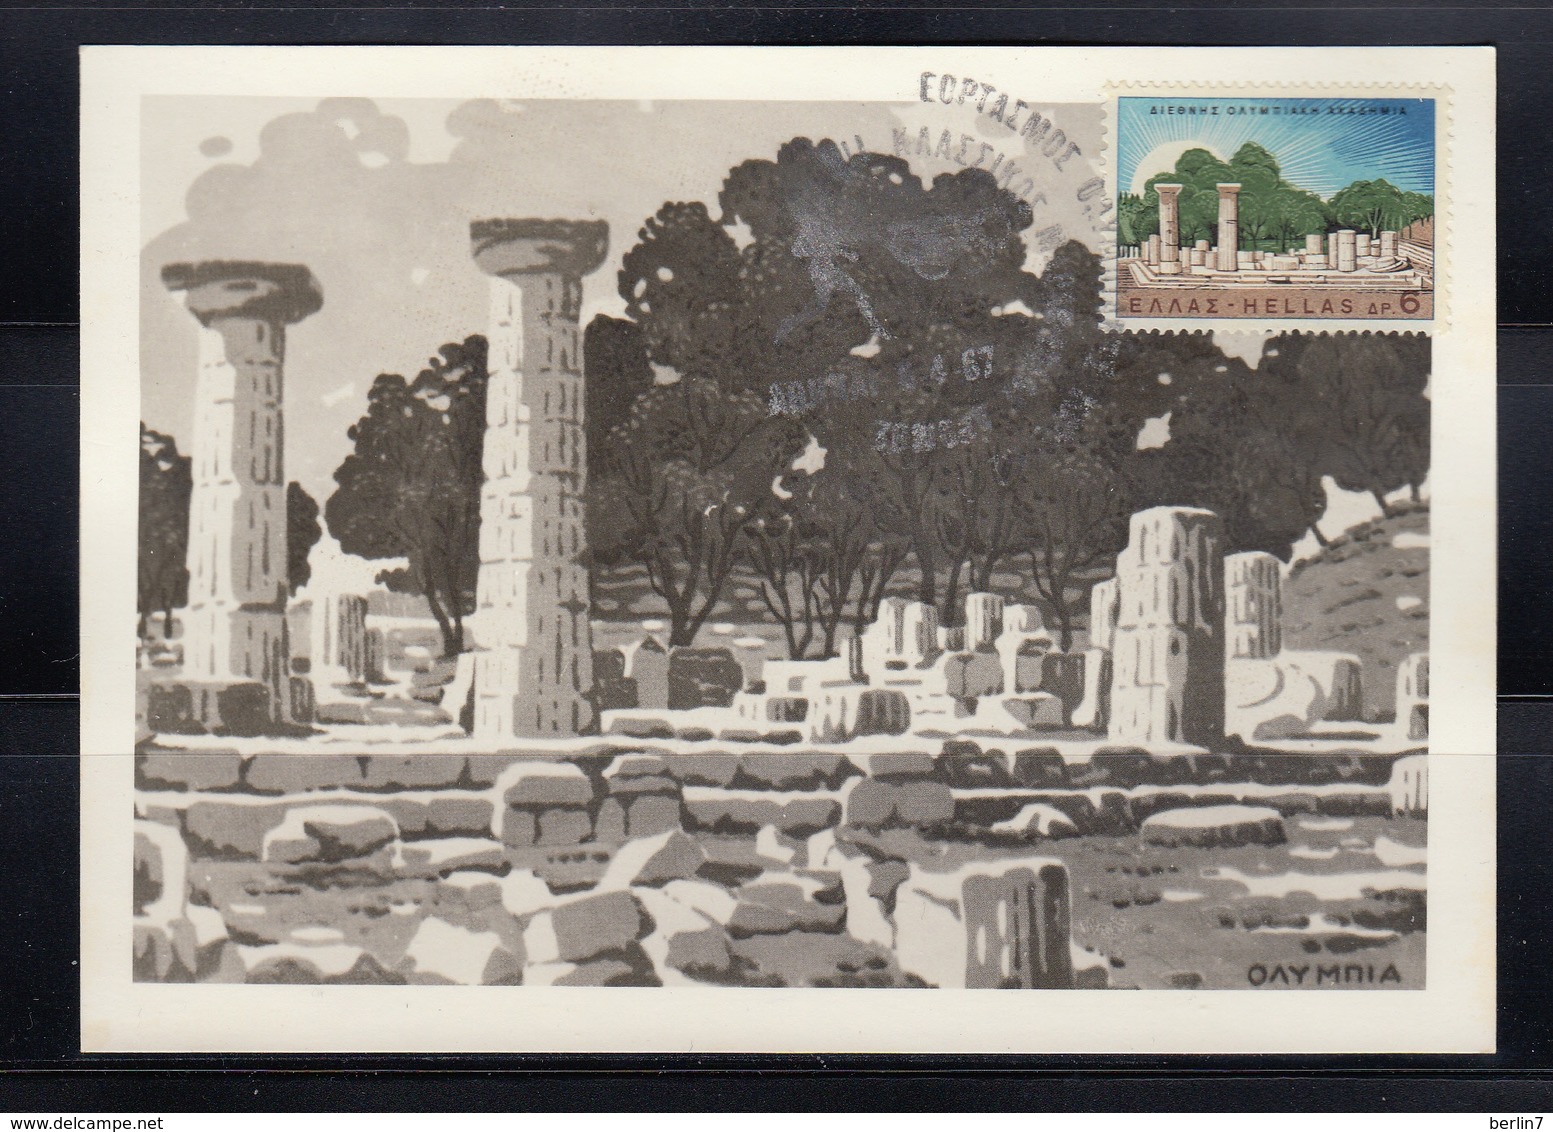 Greece Maximum Photo Postcard - Cartes-maximum (CM)